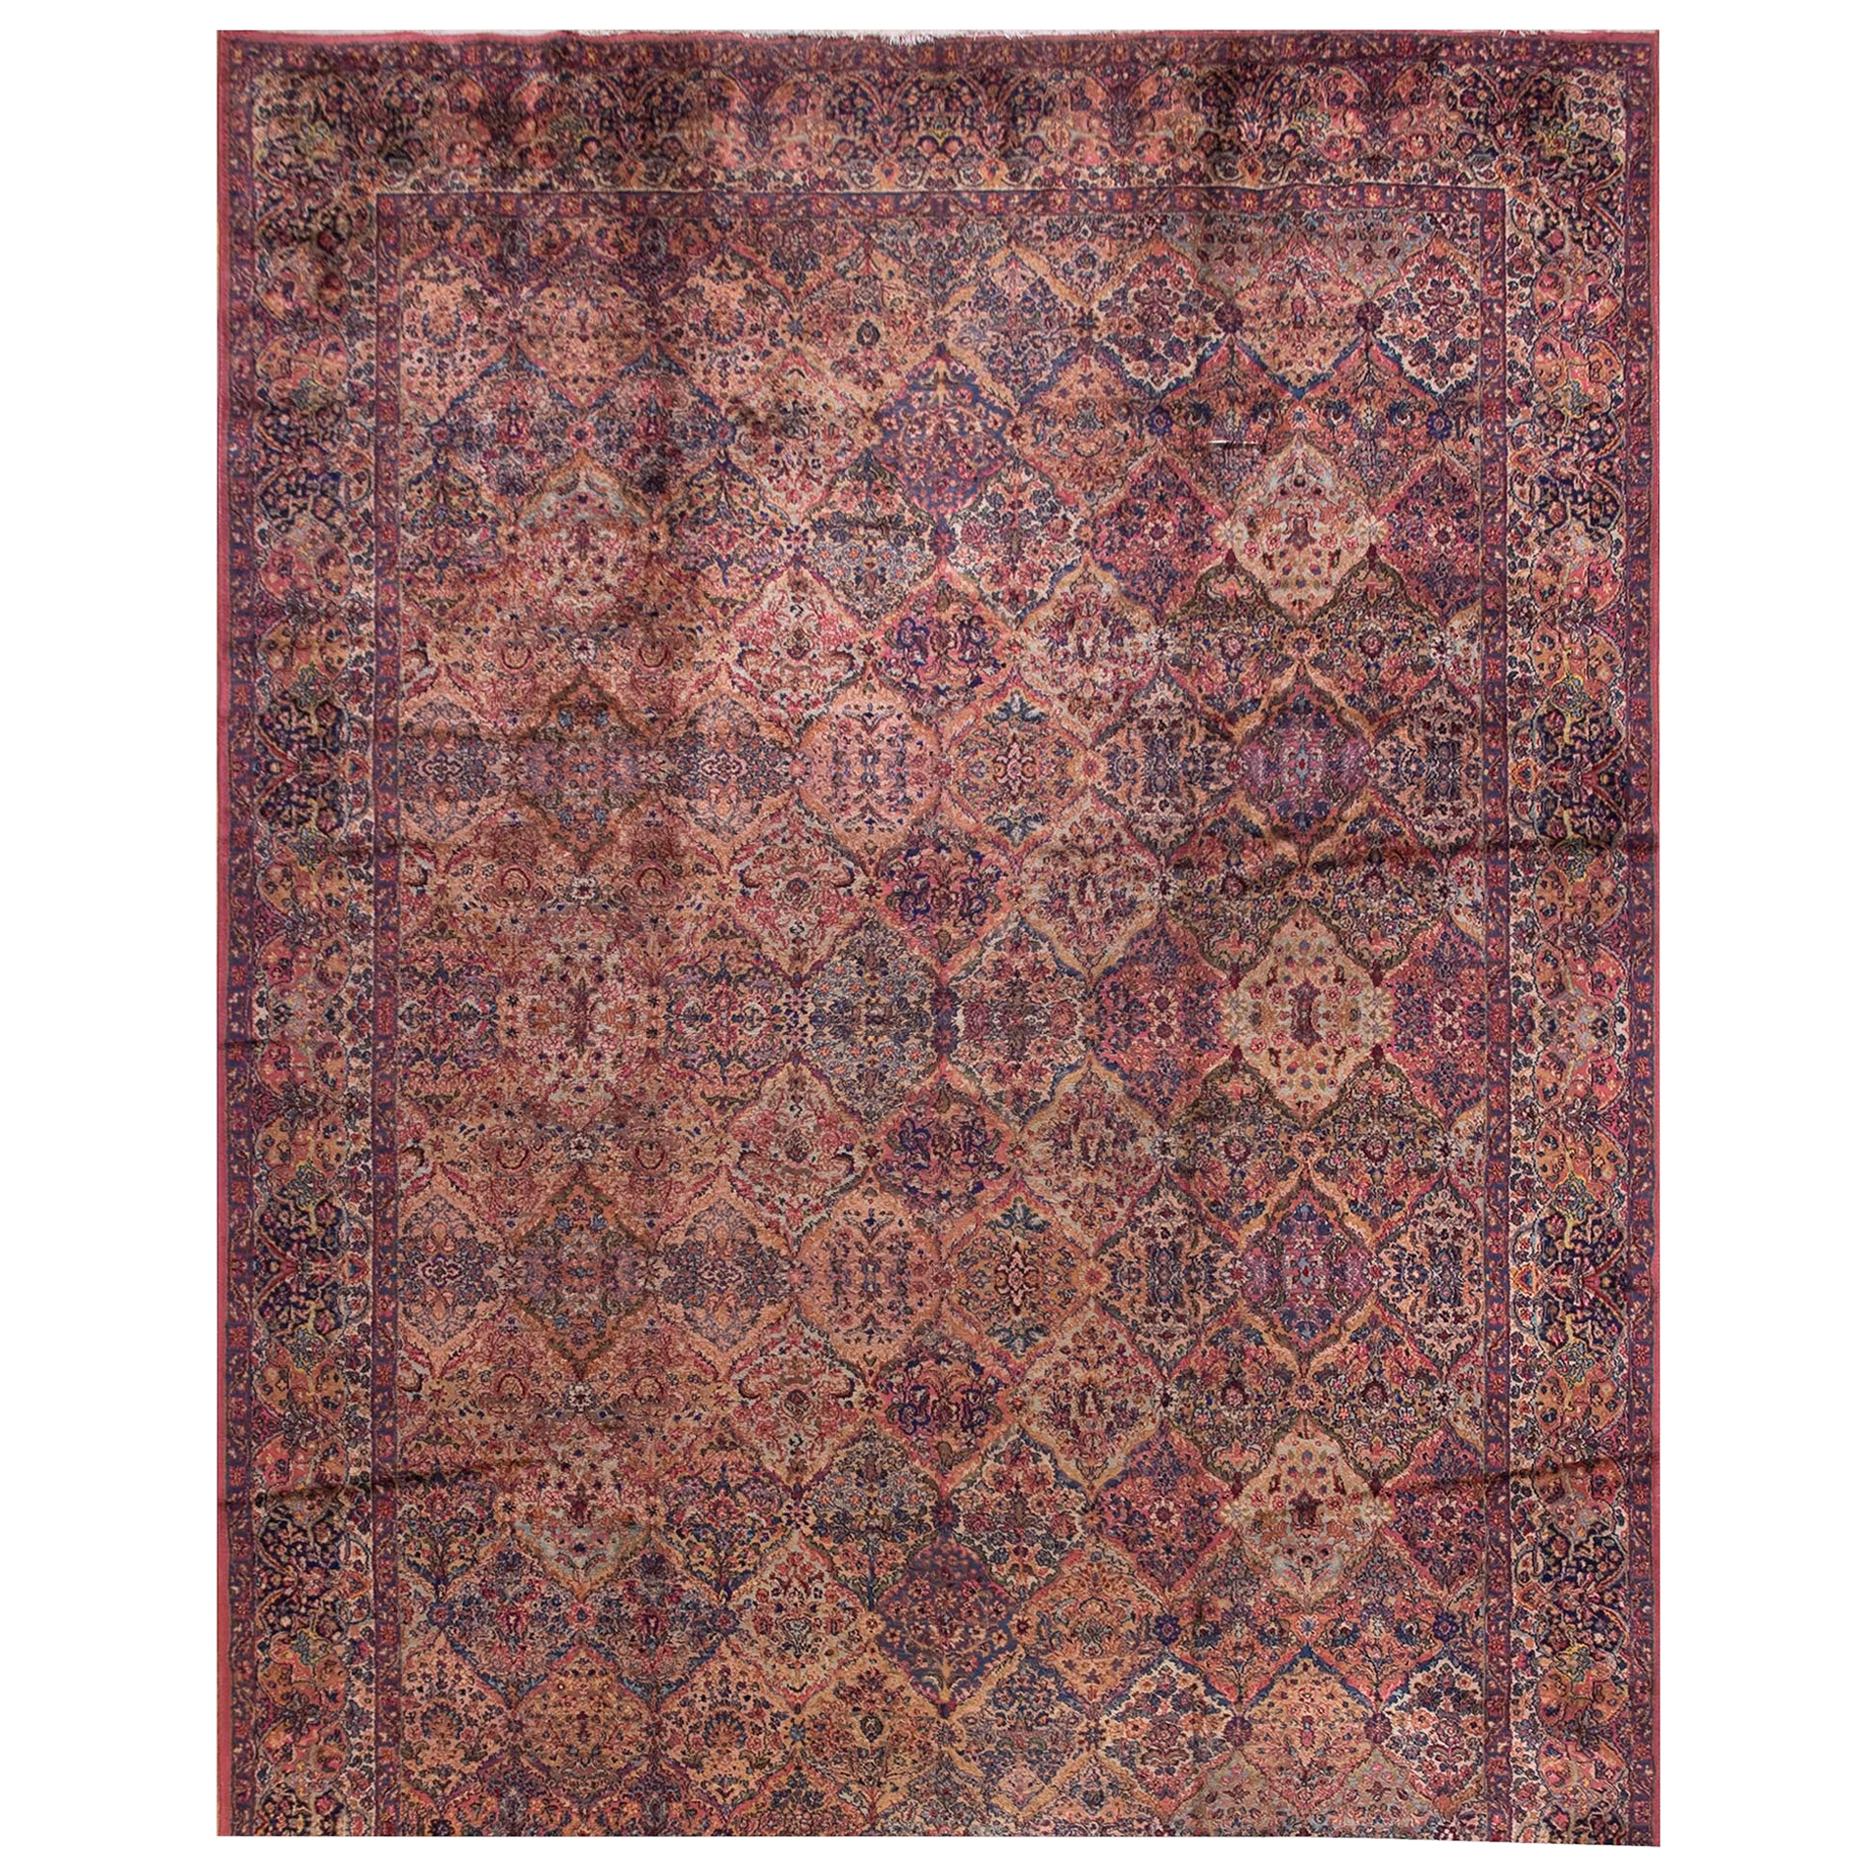  Karastan-Teppich aus der Mitte des 20. Jahrhunderts ( 11'6" x 40' x 350 x 1220")